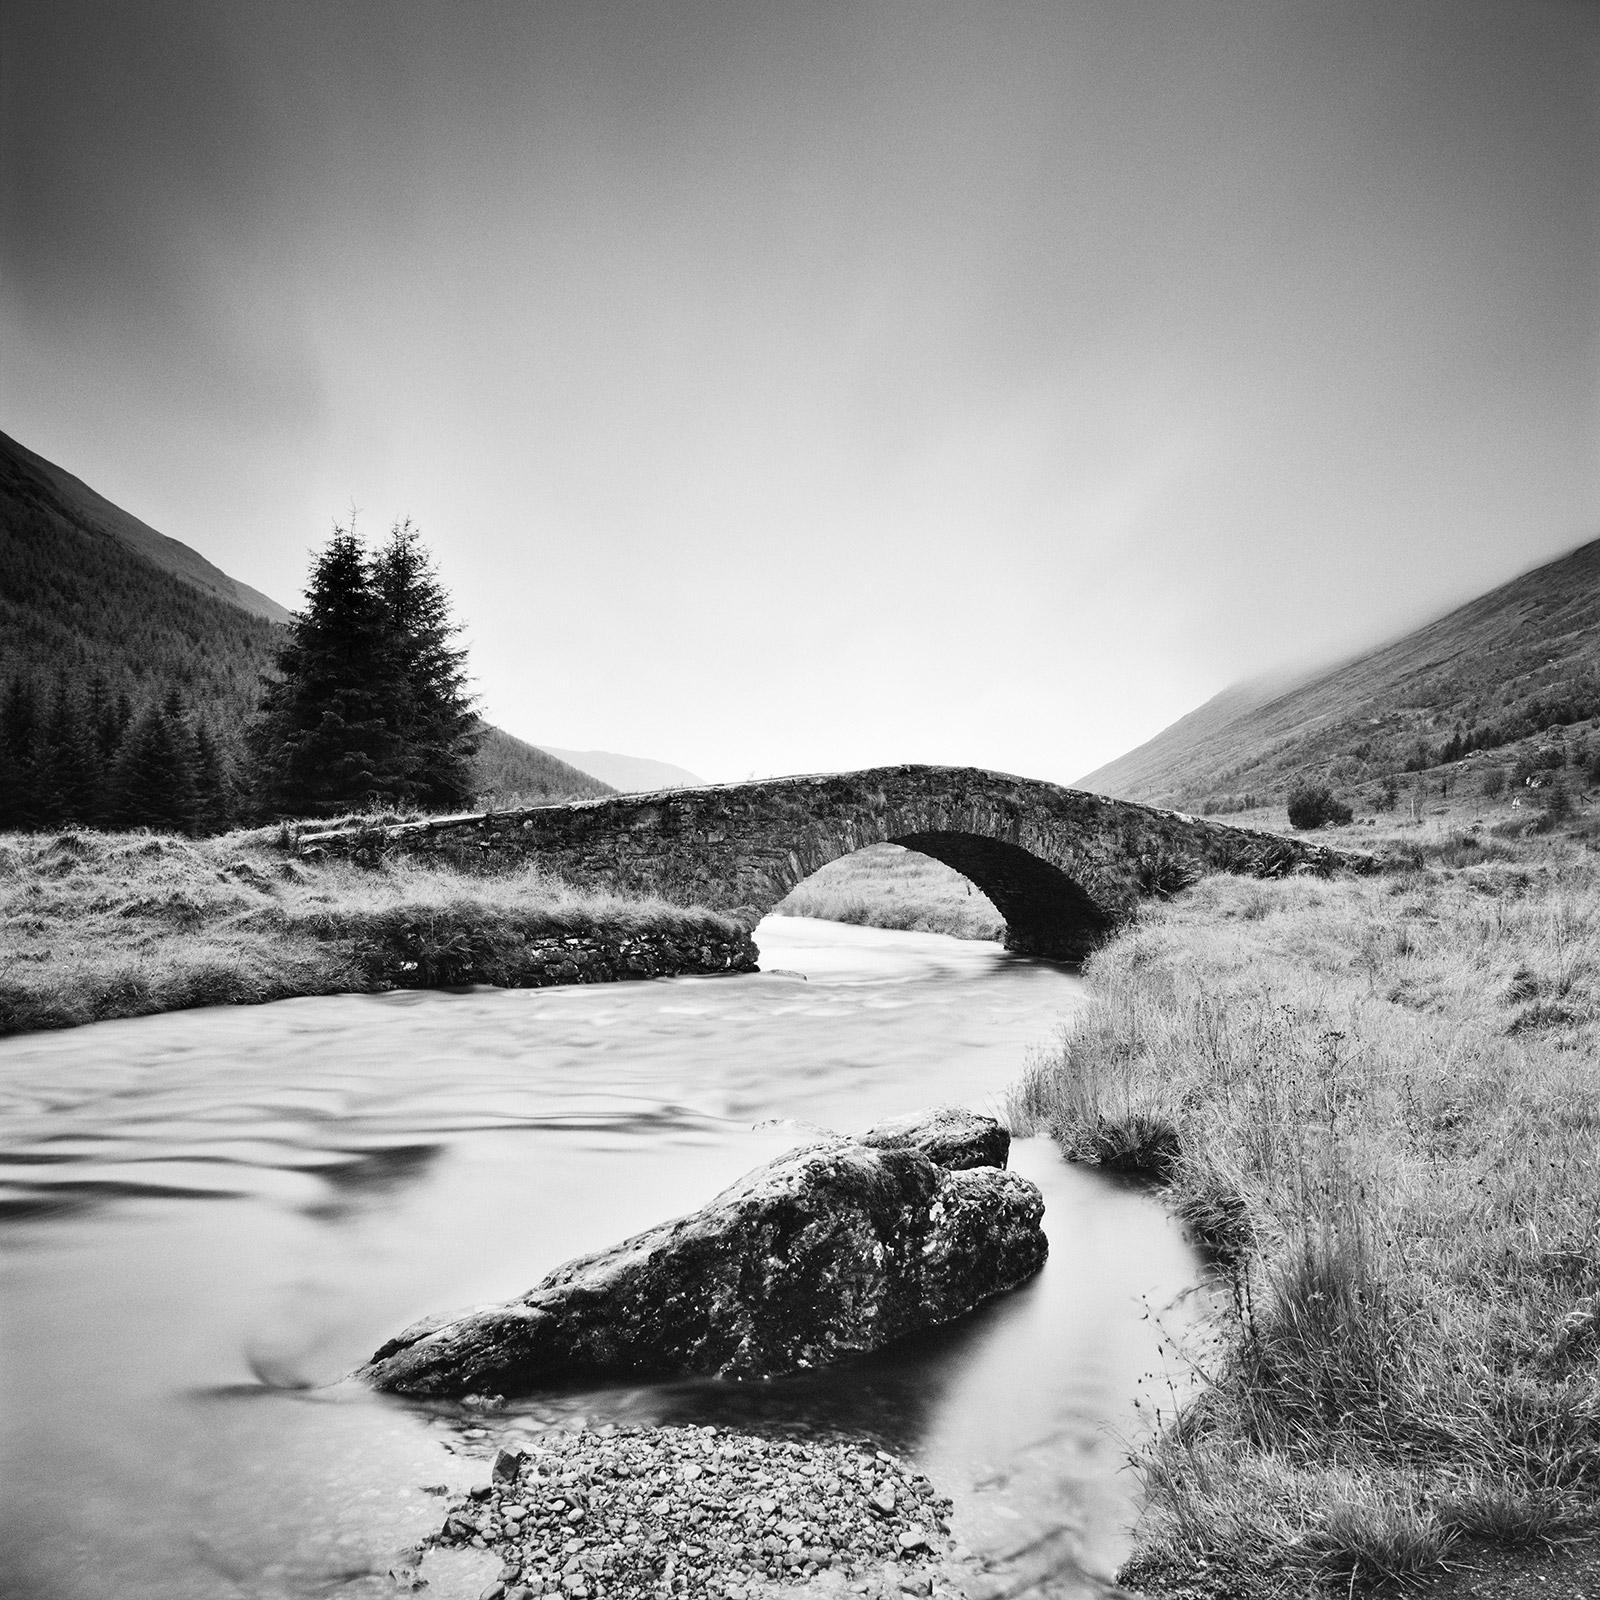 Landscape Photograph Gerald Berghammer - Stone Bridge, Highlands, Écosse, photographie de paysage en noir et blanc.